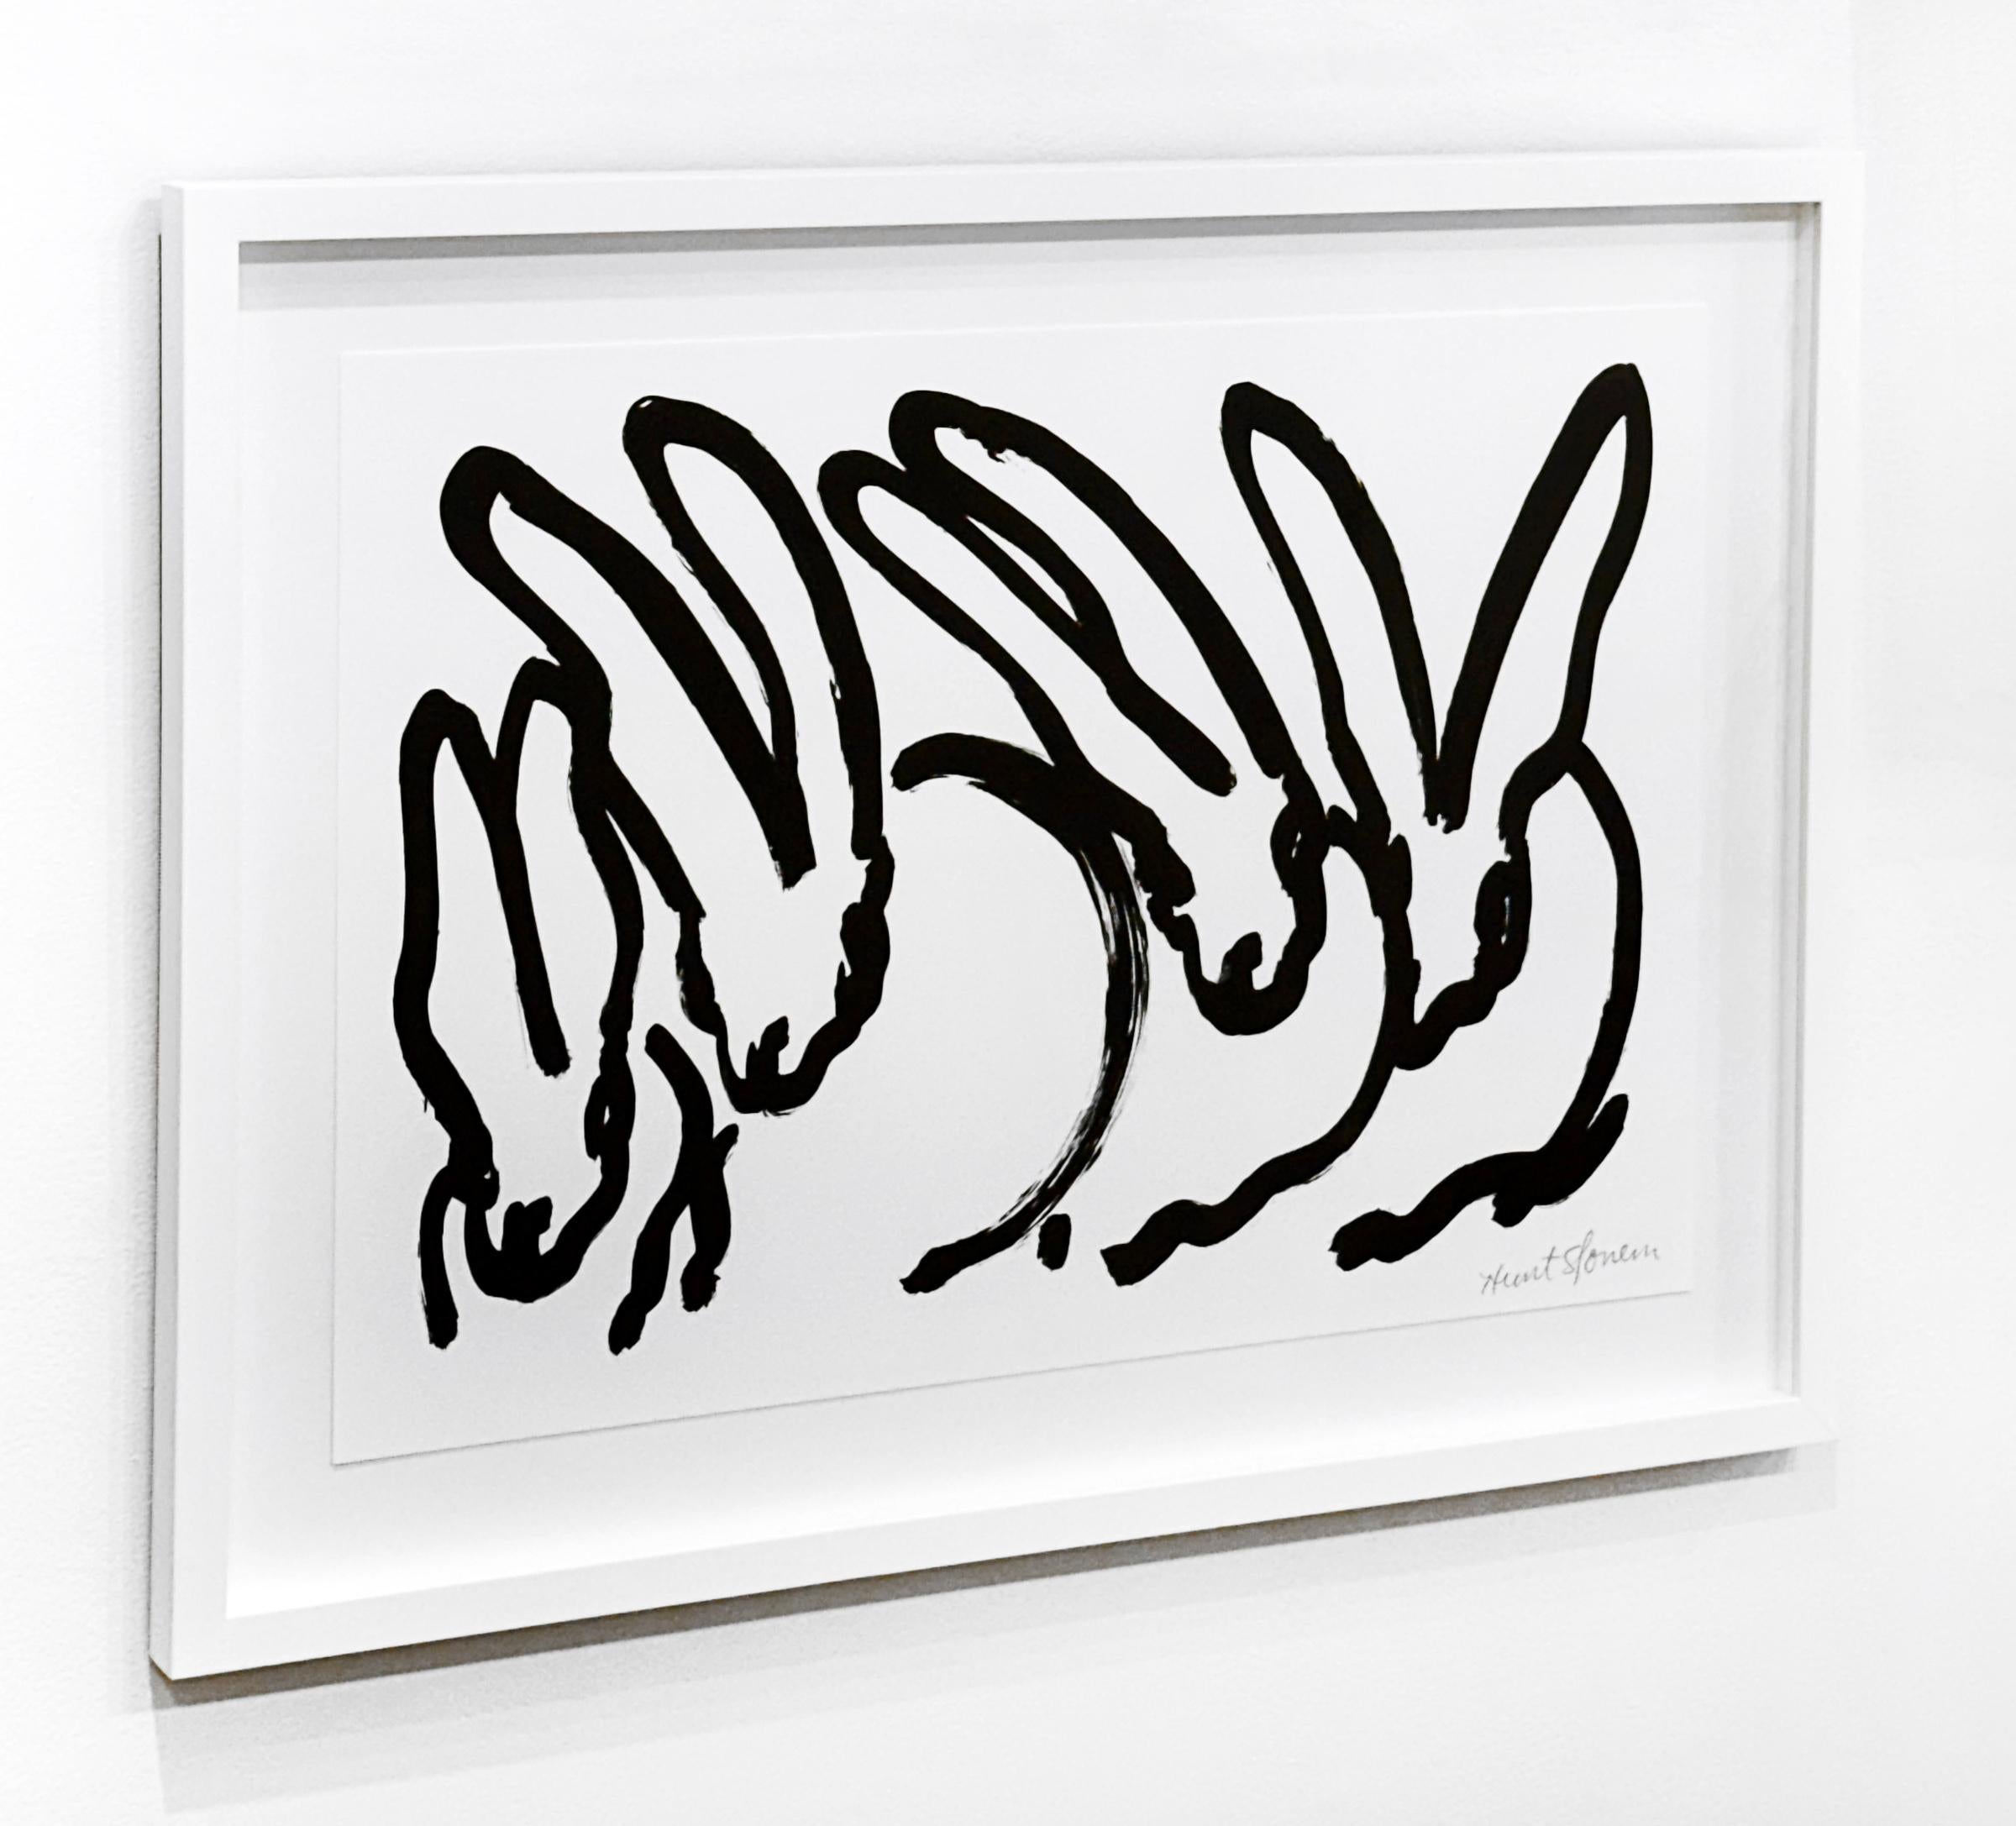 Künstler:  Slonem, Hunt
Titel:  Weiße Kaninchen II
Serie:  Kaninchen
Datum:  2017
Medium:  Lithographie auf Papier
Ungerahmt Abmessungen:  16